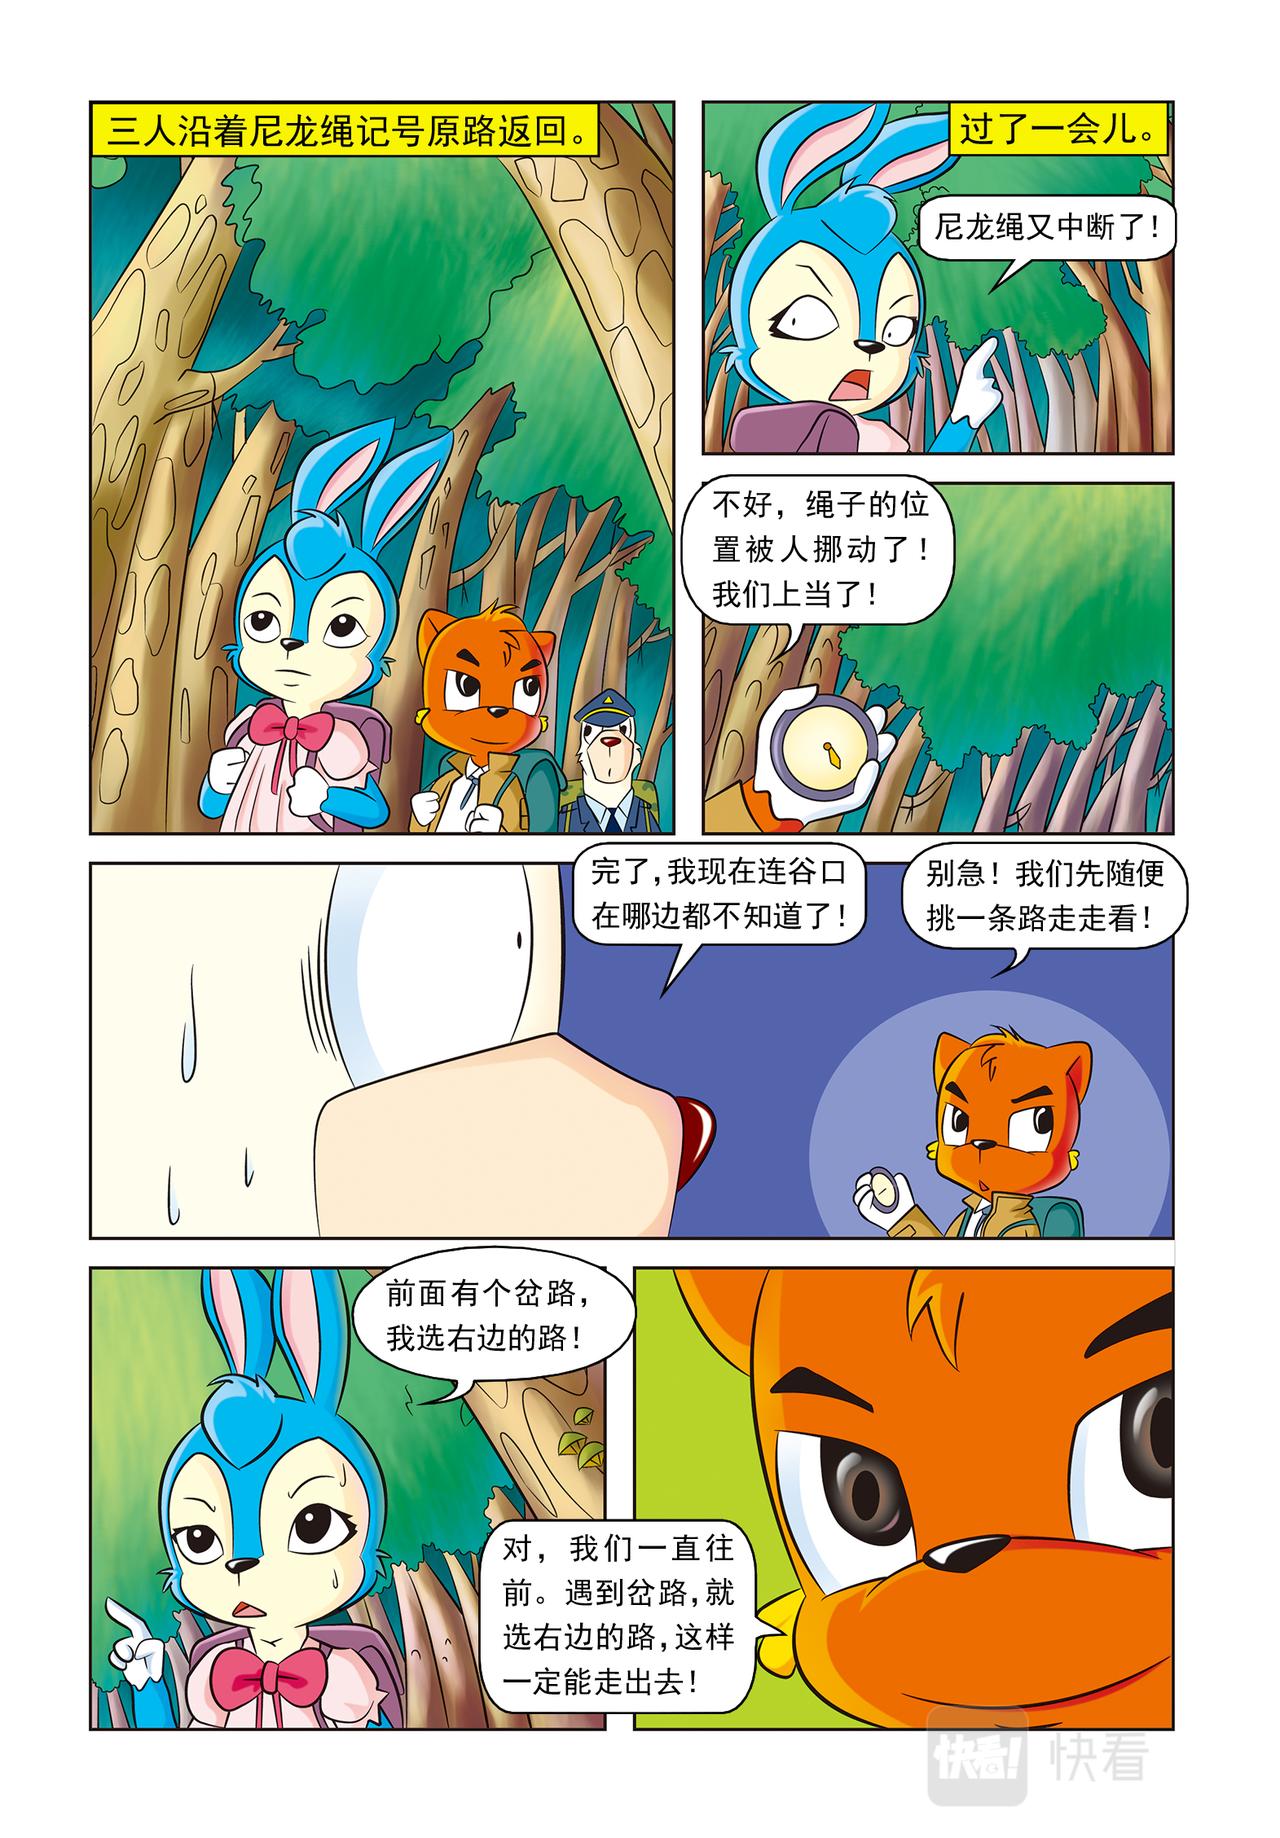 虹猫蓝兔惊险探案系列 - 第十六话神秘绑架案 - 1